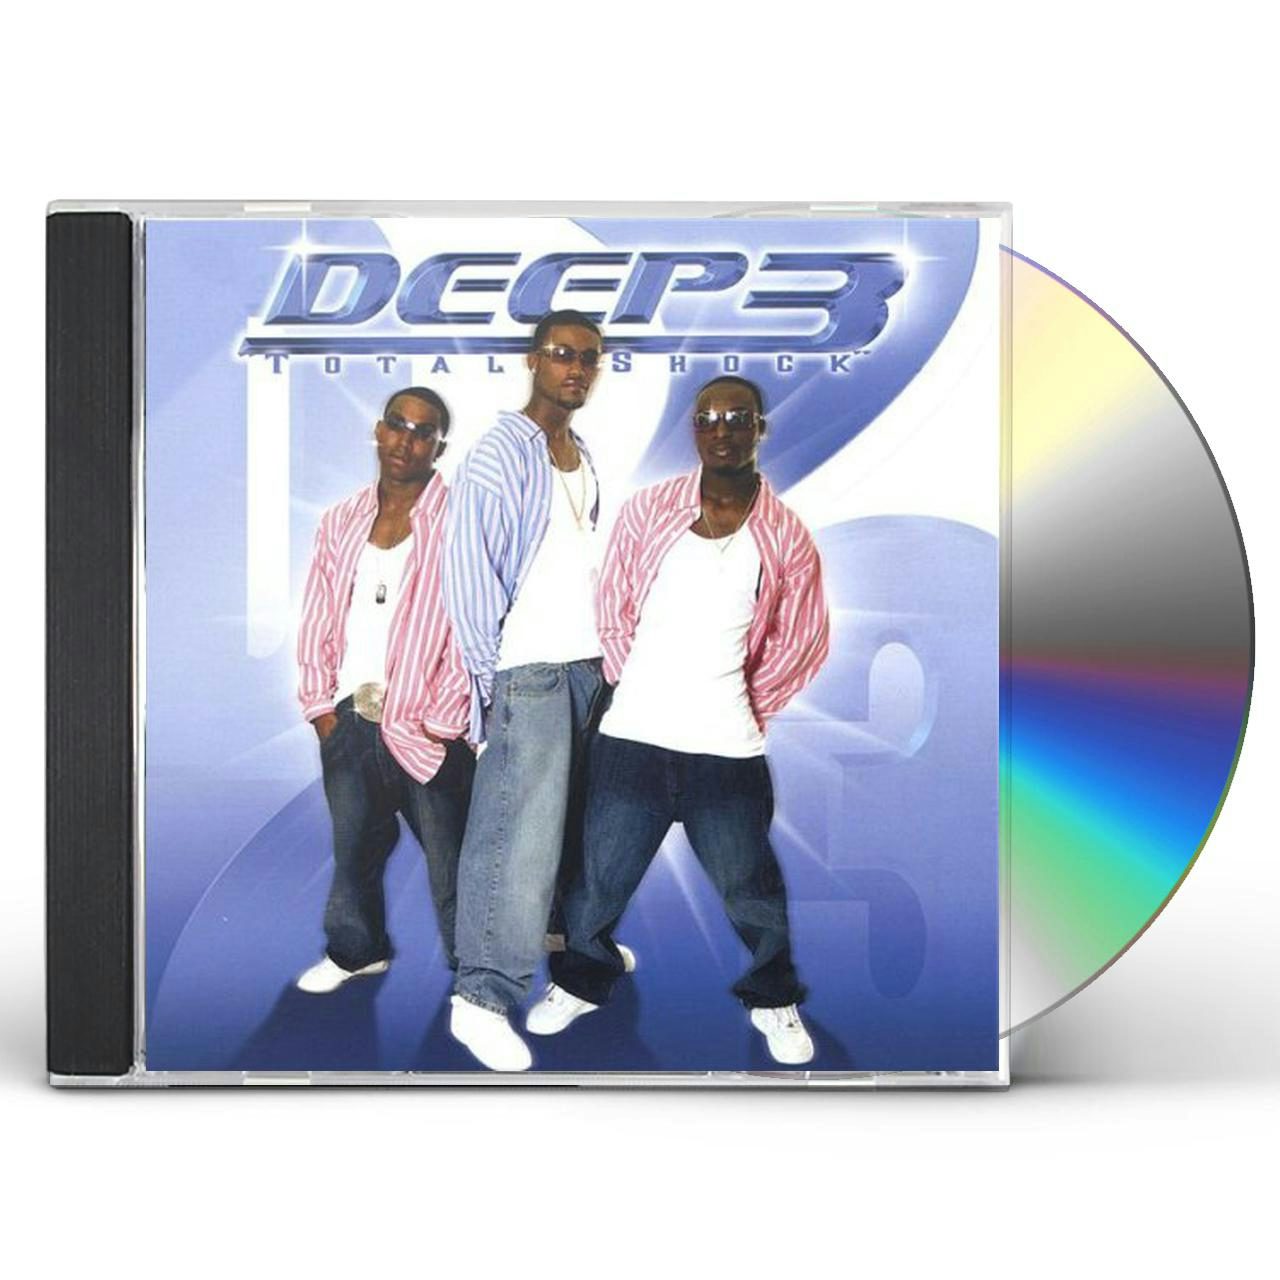 CD. DEEP 3 GO DEEP 